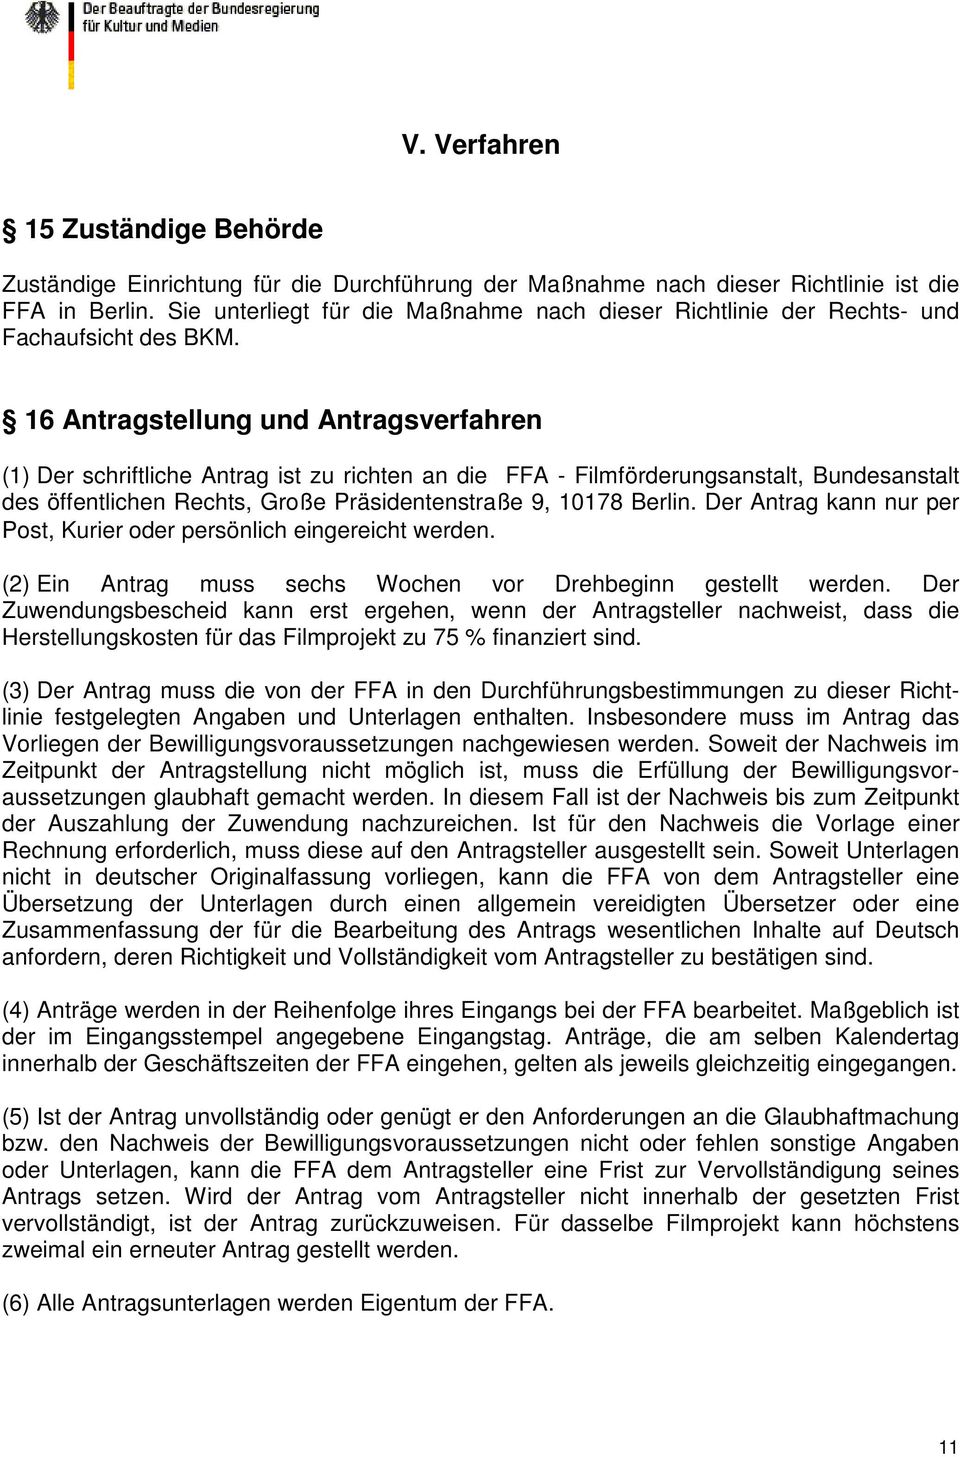 16 Antragstellung und Antragsverfahren (1) Der schriftliche Antrag ist zu richten an die FFA - Filmförderungsanstalt, Bundesanstalt des öffentlichen Rechts, Große Präsidentenstraße 9, 10178 Berlin.